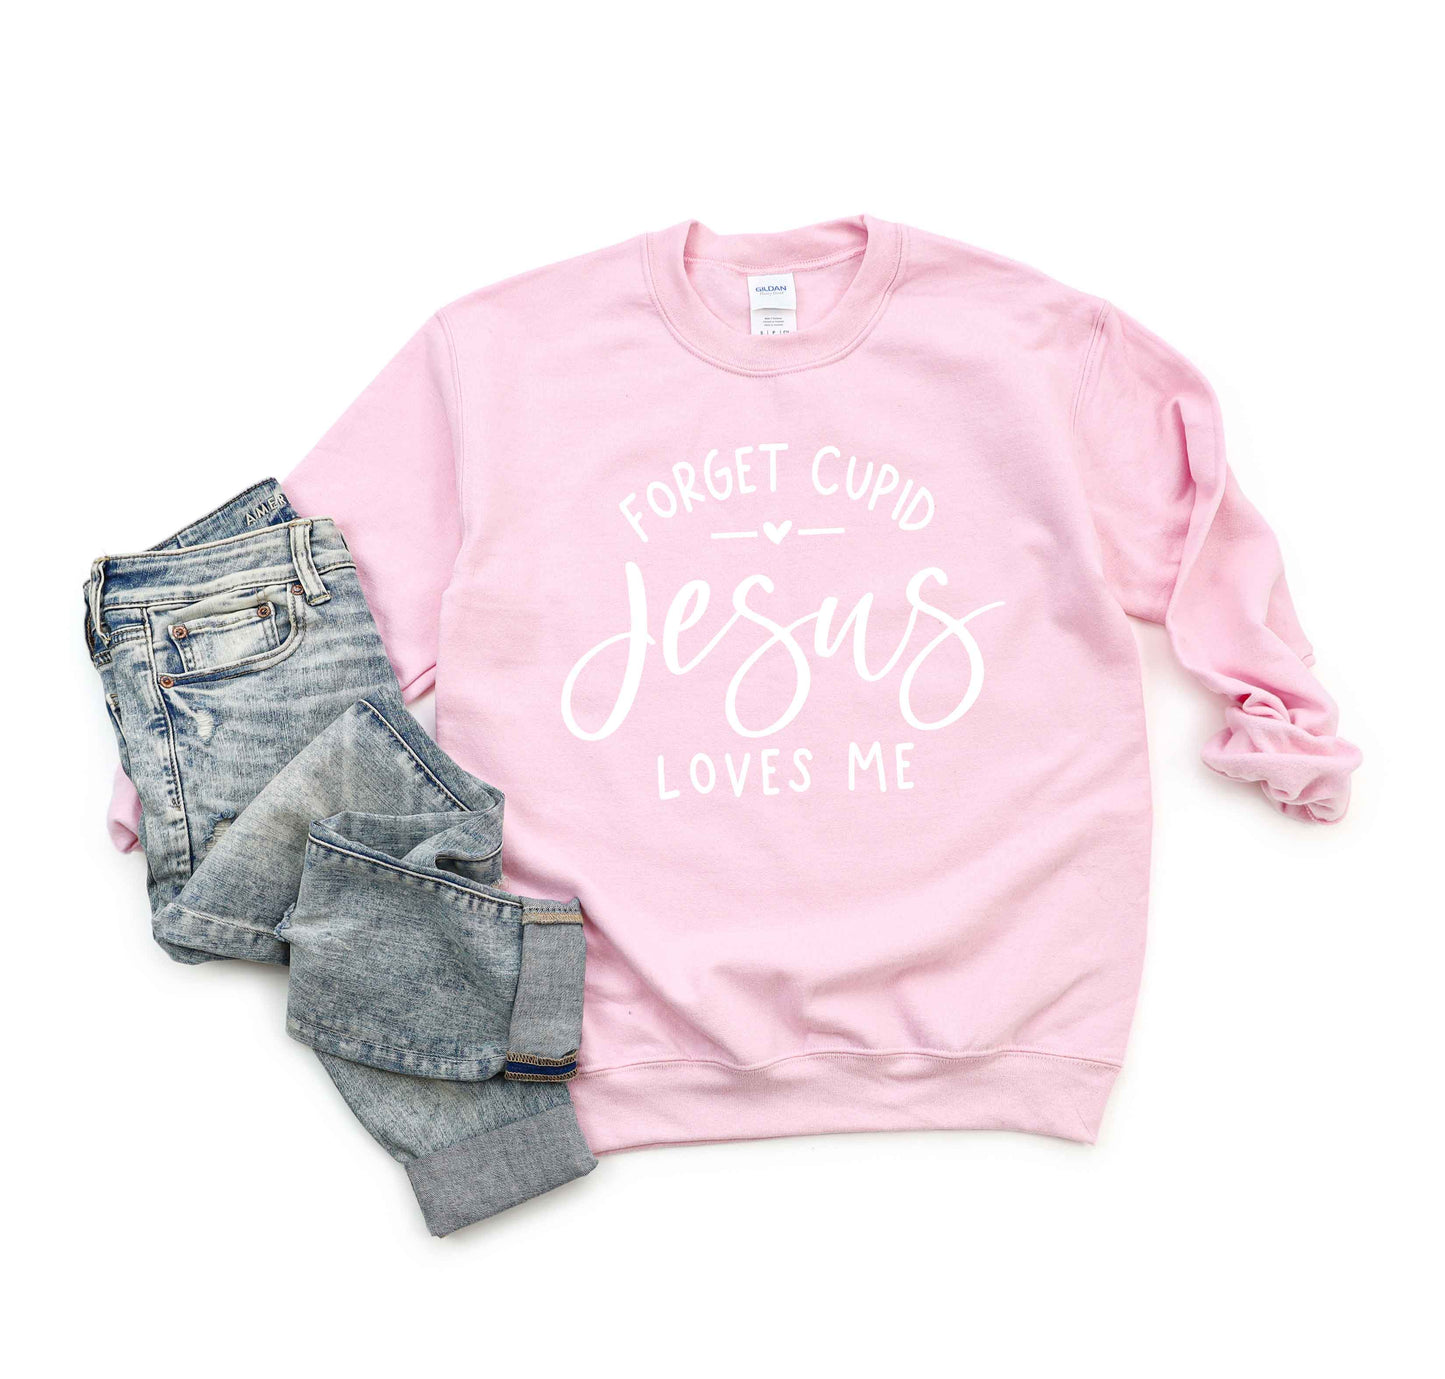 Forget Cupid Jesus Loves Me | Sweatshirt